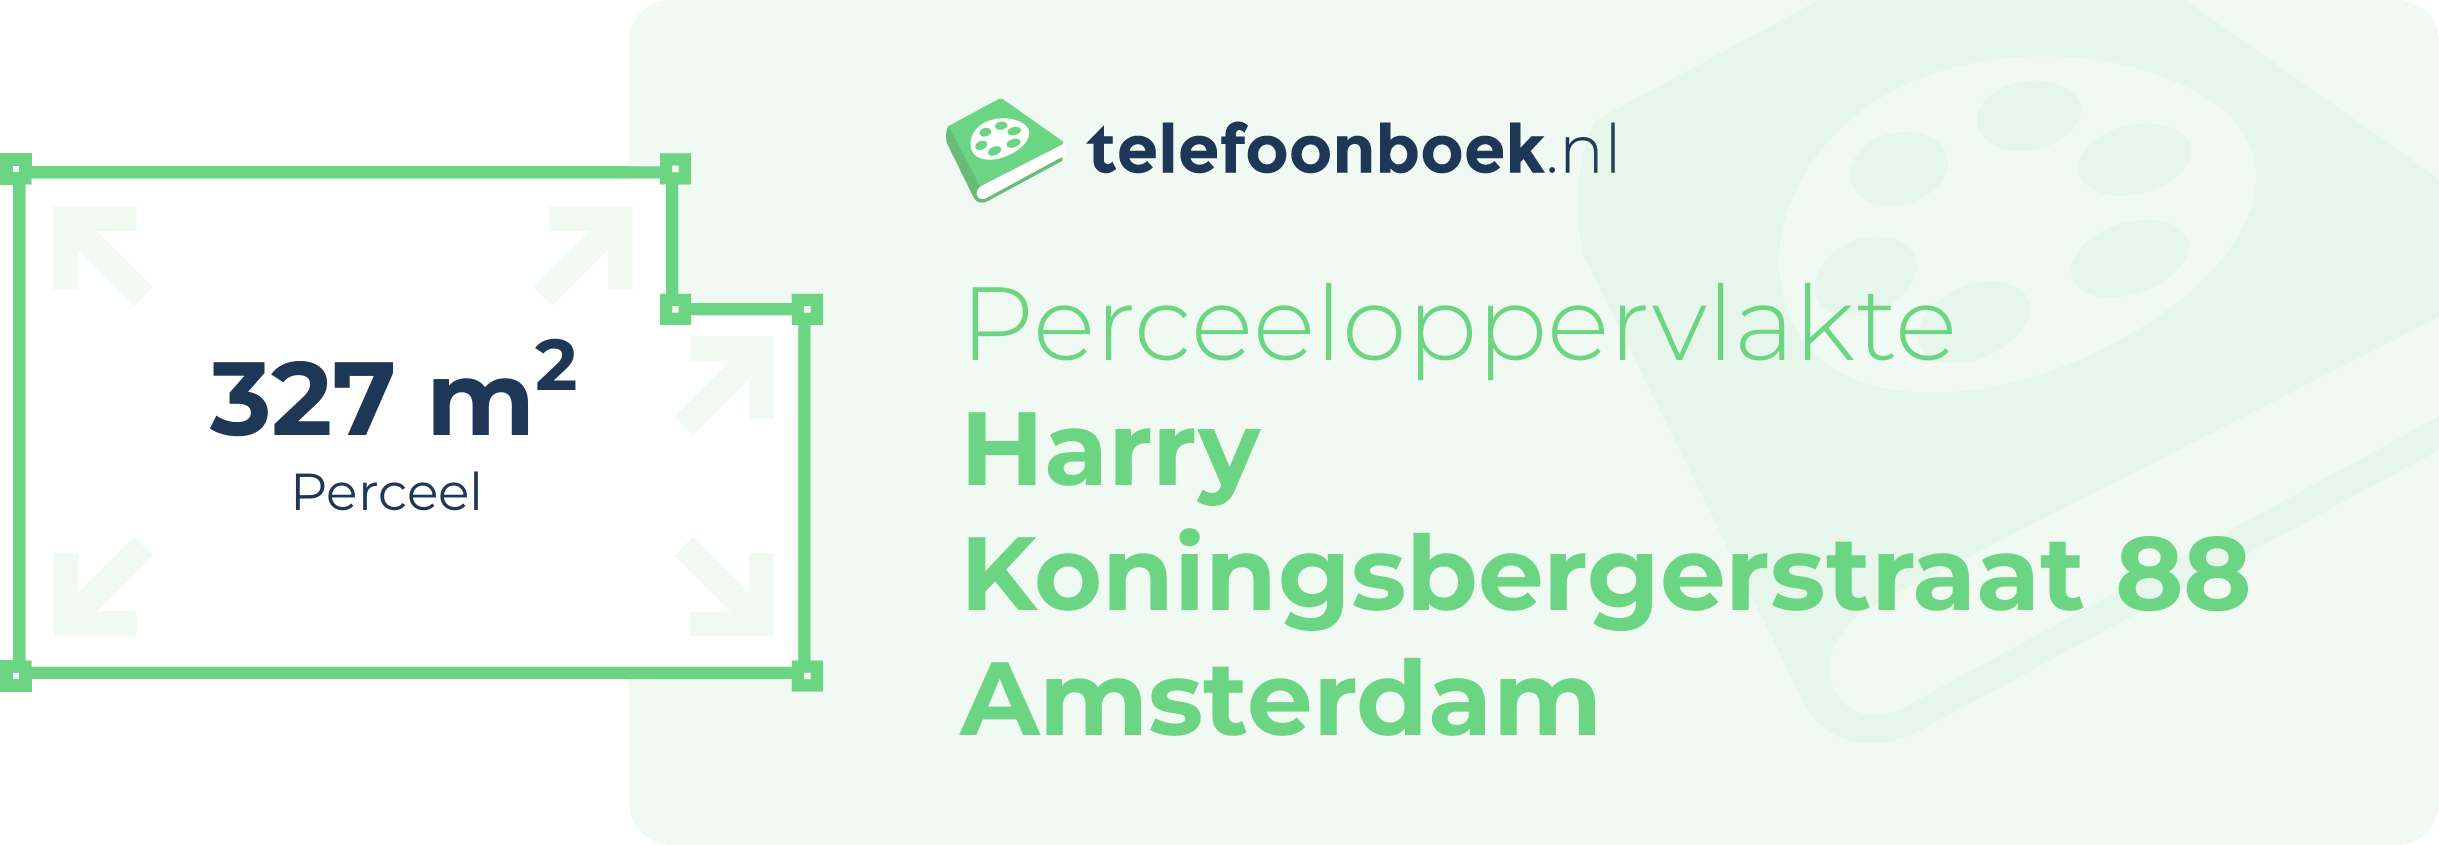 Perceeloppervlakte Harry Koningsbergerstraat 88 Amsterdam